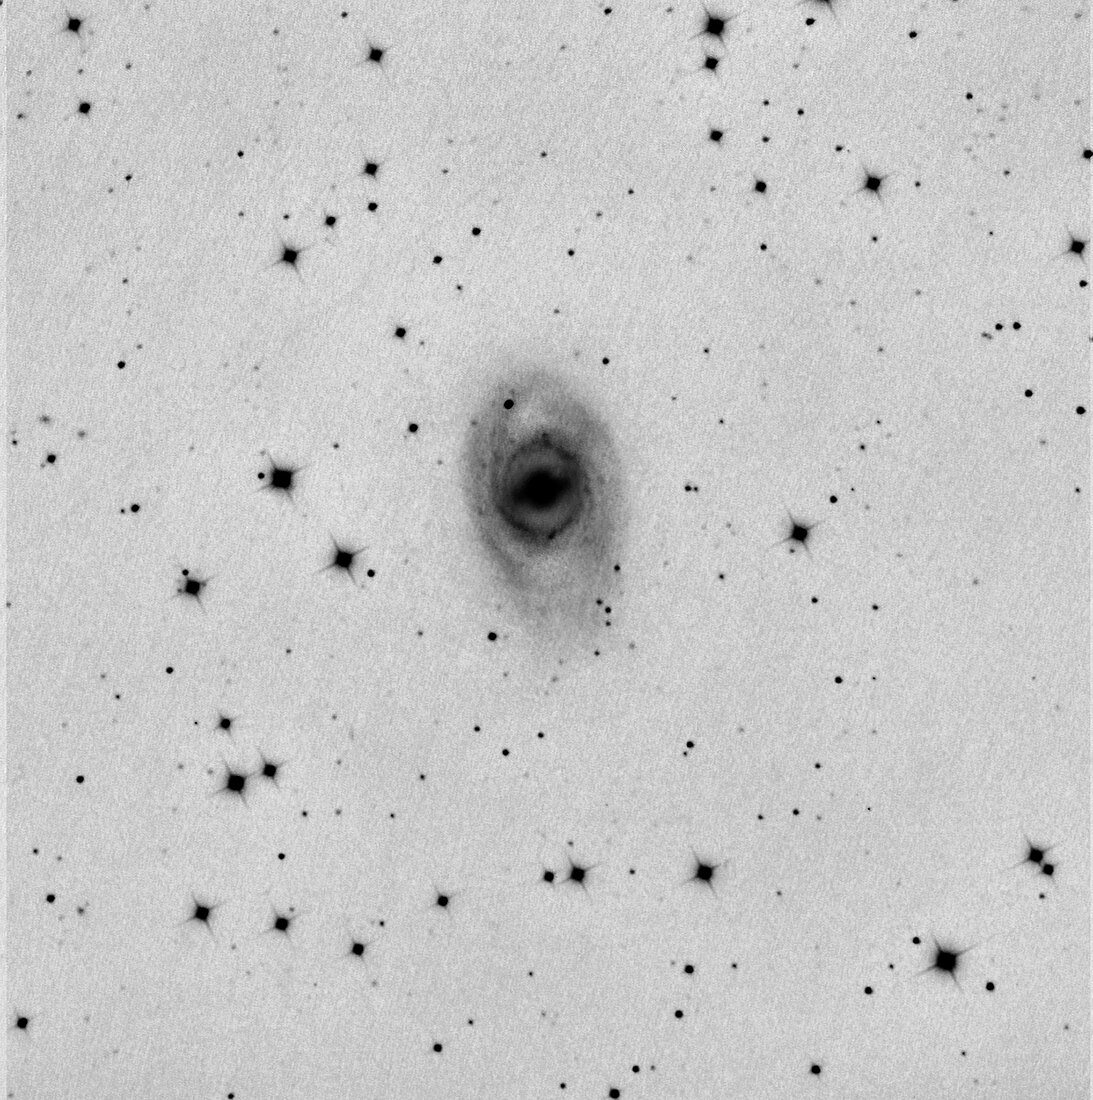 Supernova 2012aw